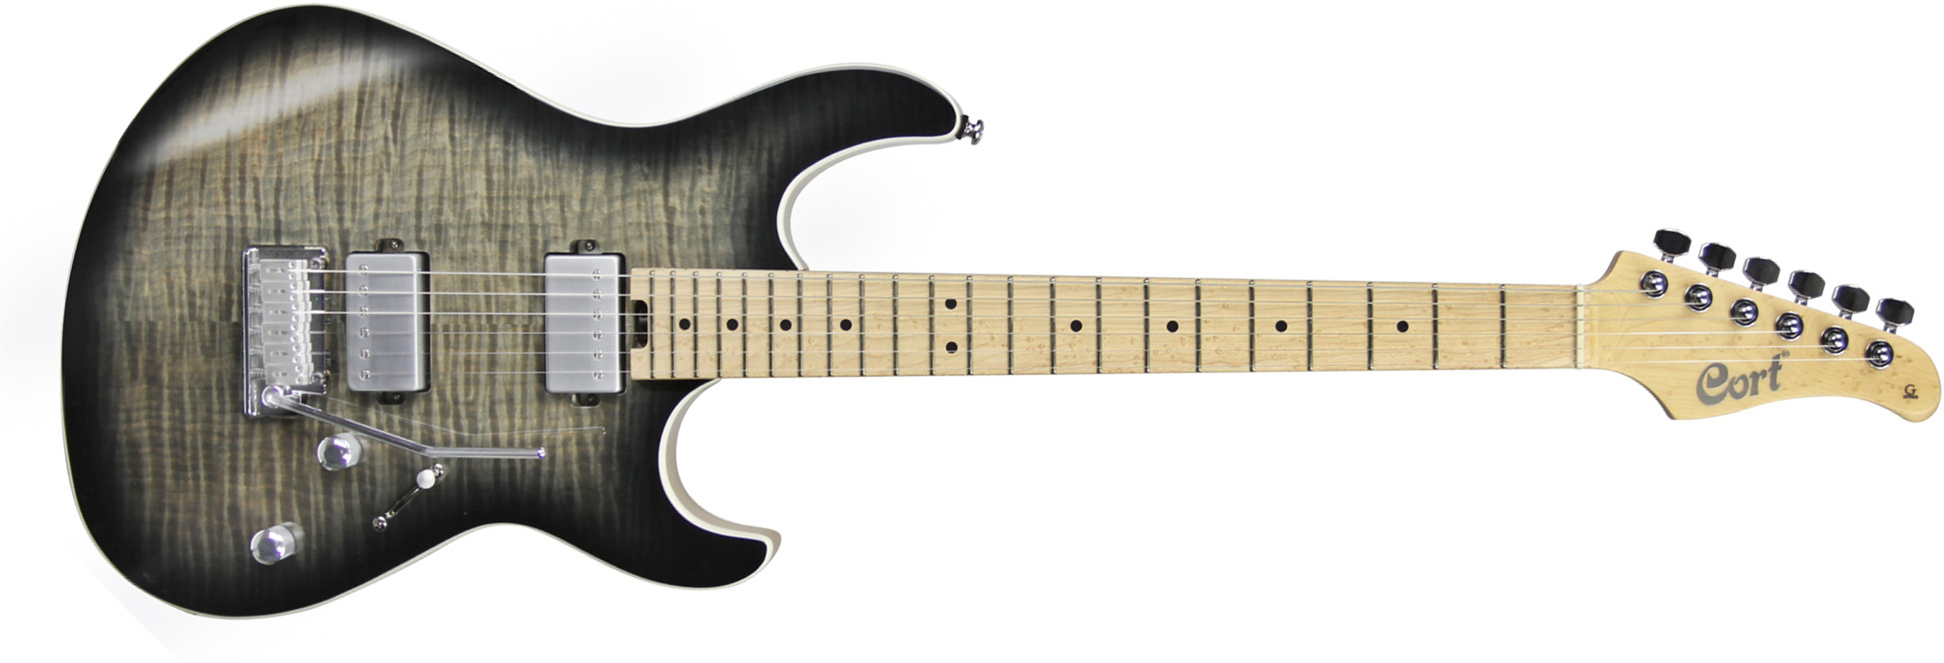 Cort G290 Fat Tbb Hh Trem Mn - Trans Black Burst - Elektrische gitaar in Str-vorm - Main picture